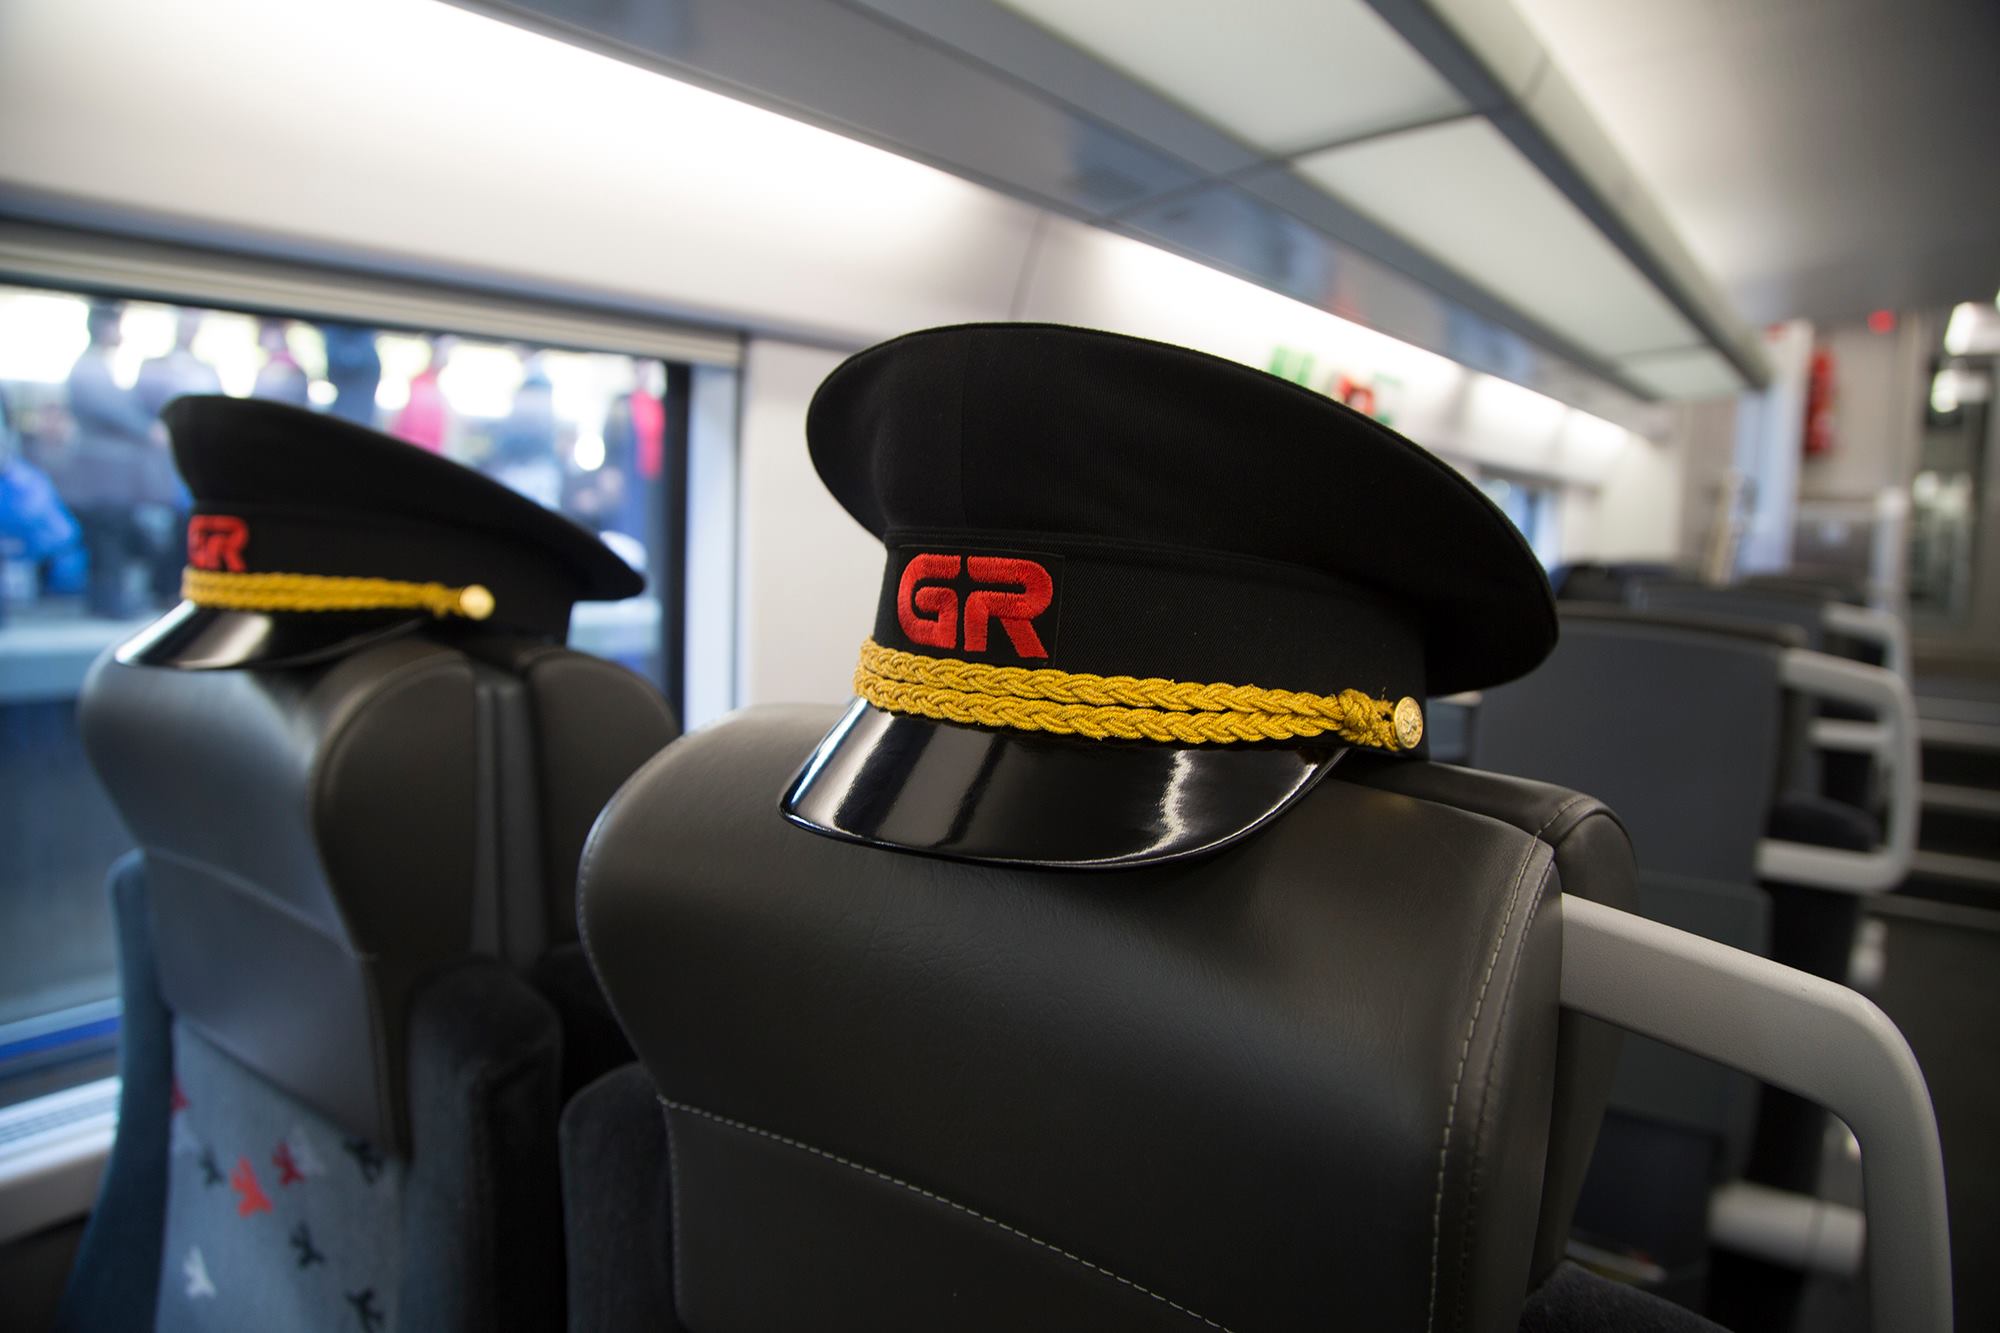 Georgian Railway #новости «Грузинская железная дорога», Covid-19, коронавирус в Грузии, пассажирские перевозки